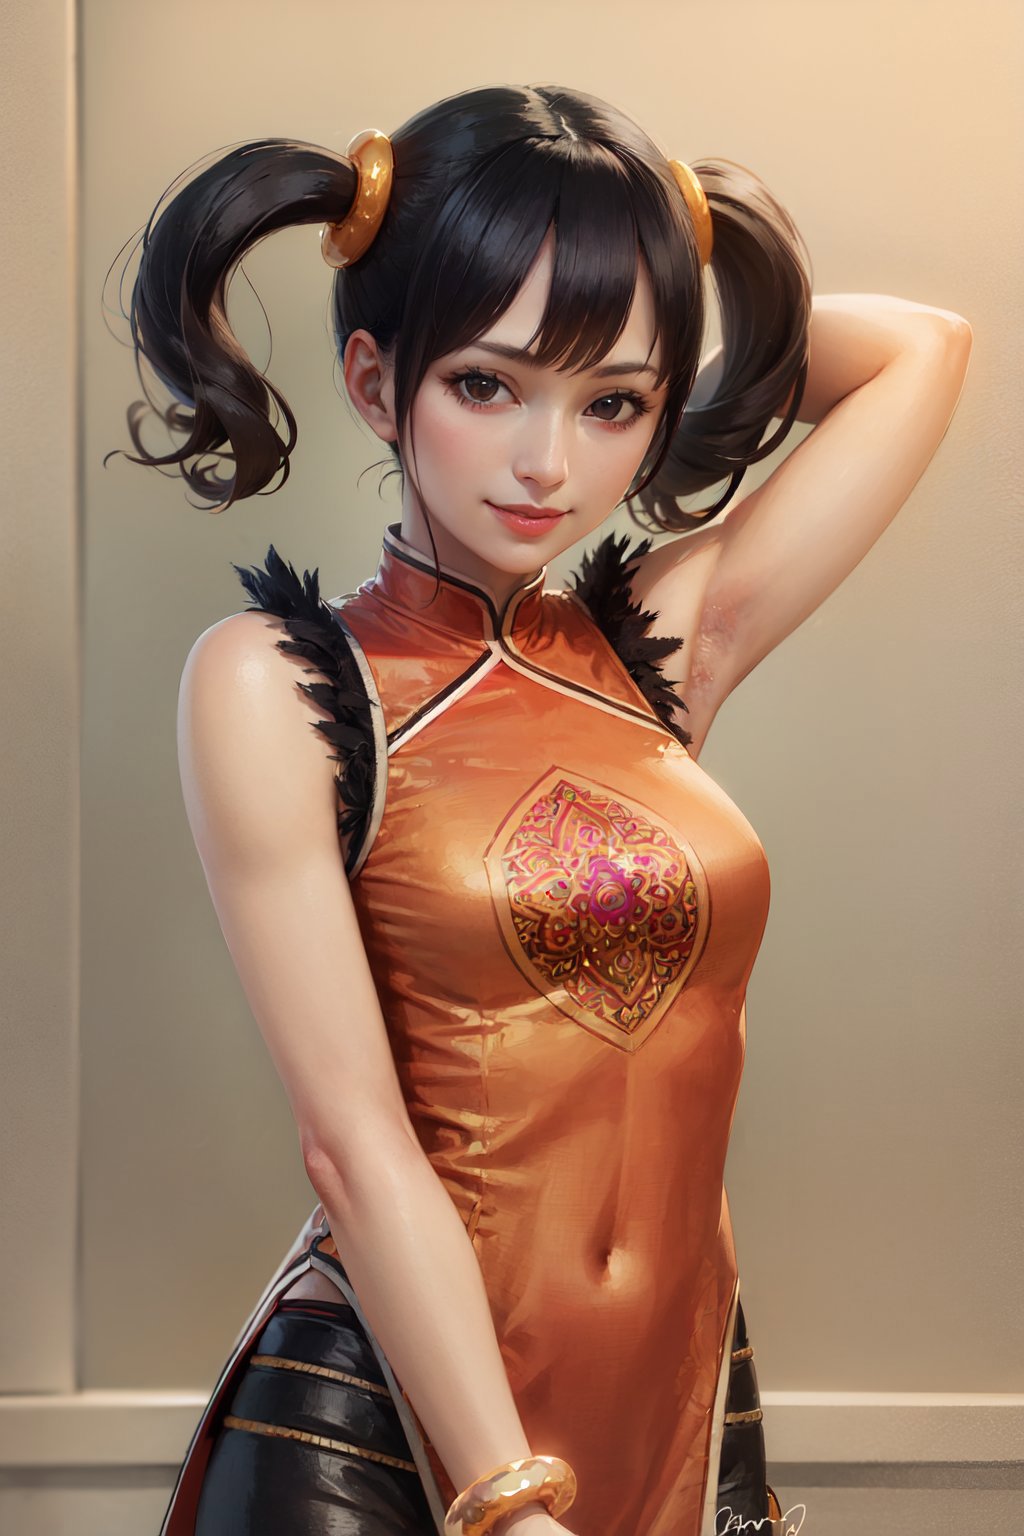 Ling Xiaoyu | Tekken image by justTNP